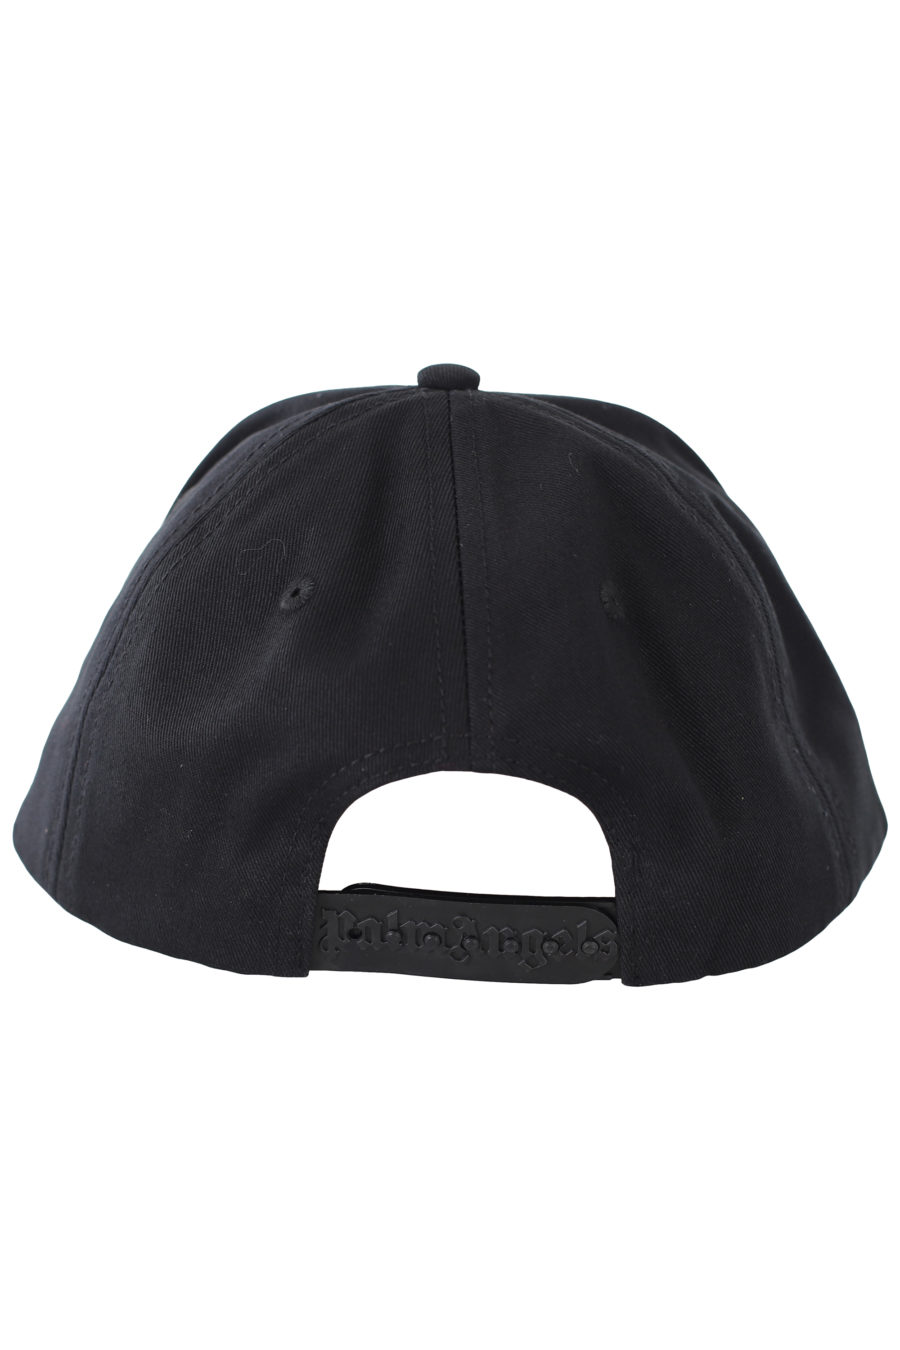 Gorra negra con logo pequeño en relieve - IMG 9390